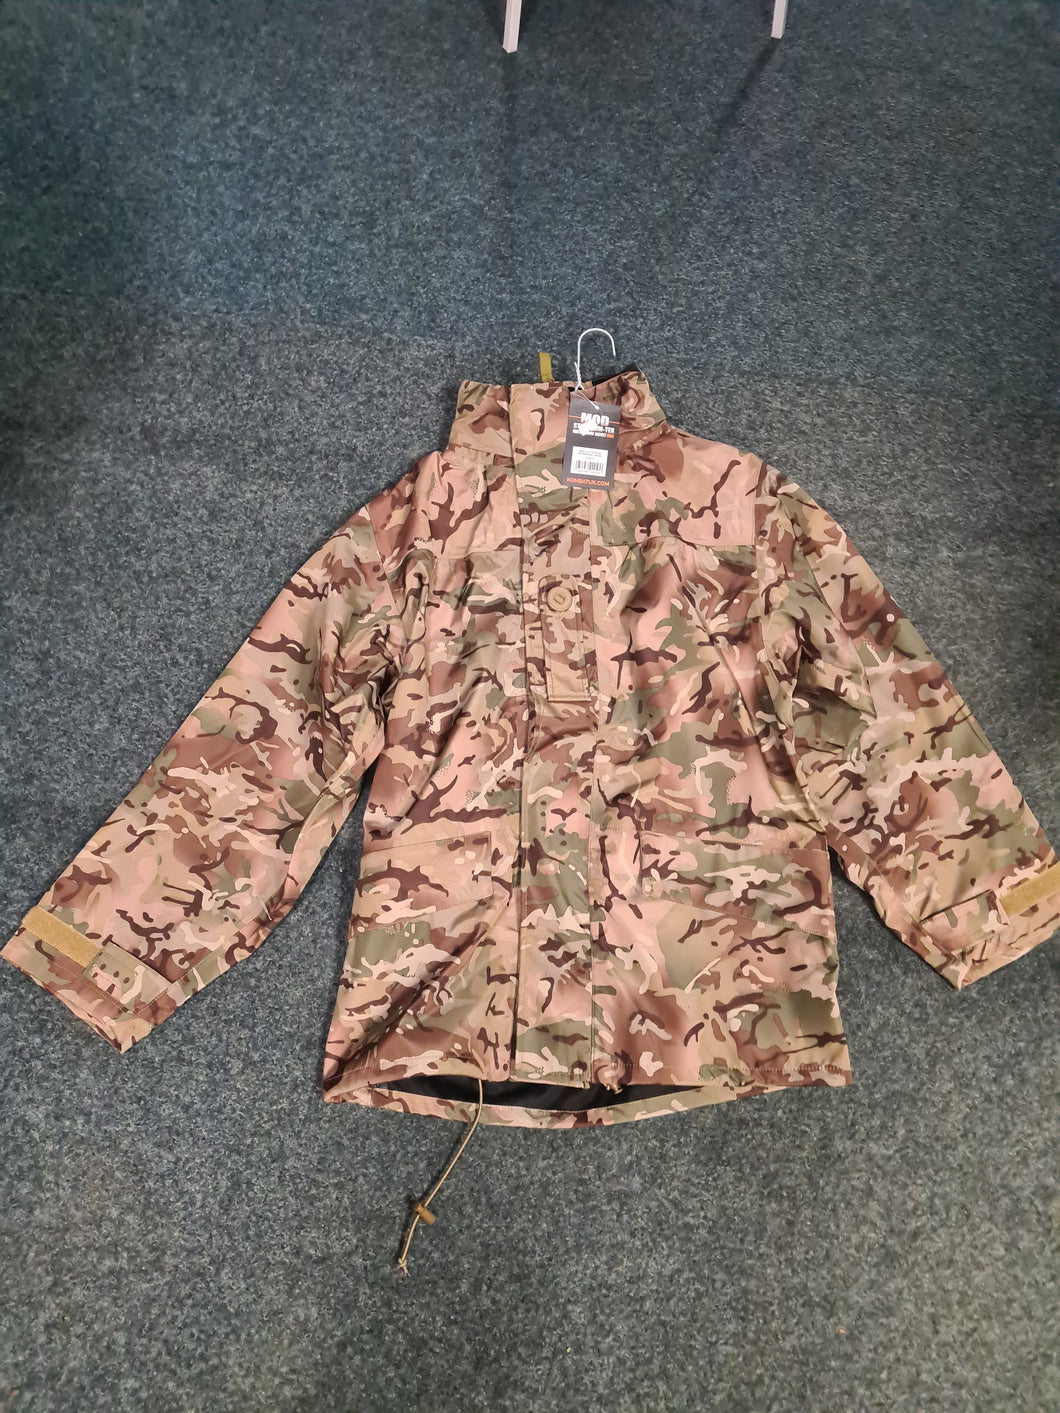 Komtex BTP (MTP STYLE ) mod gortex style jacket